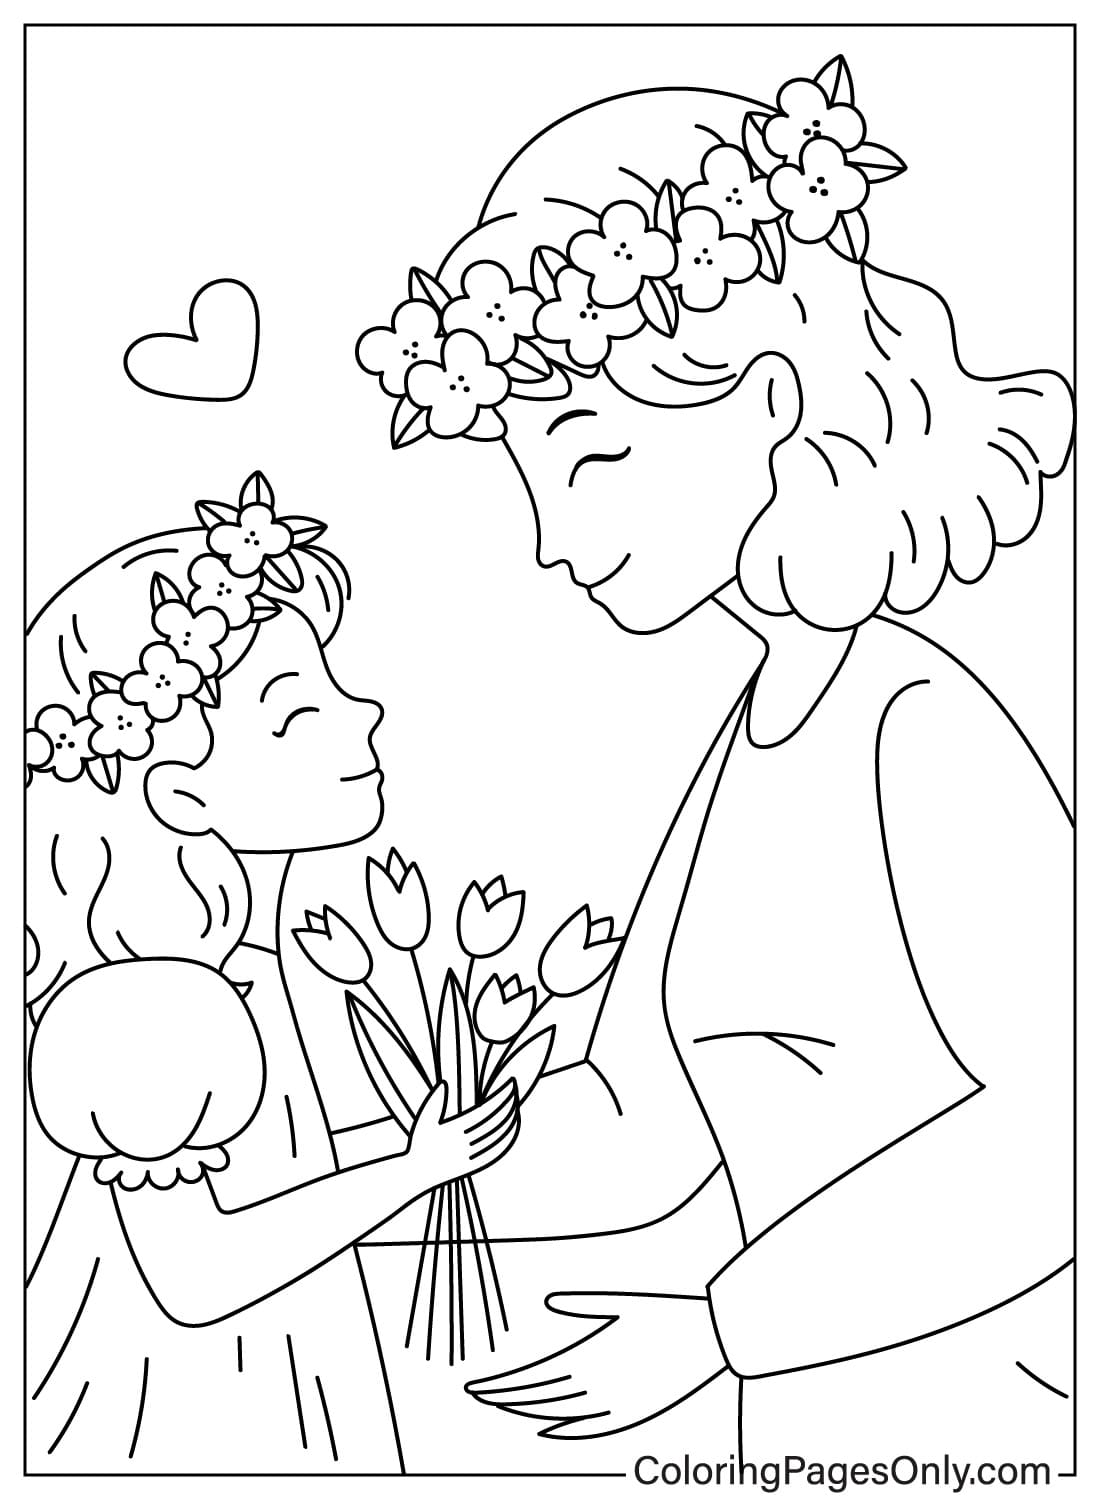 Sa fille offre des fleurs à sa mère pour la fête des mères